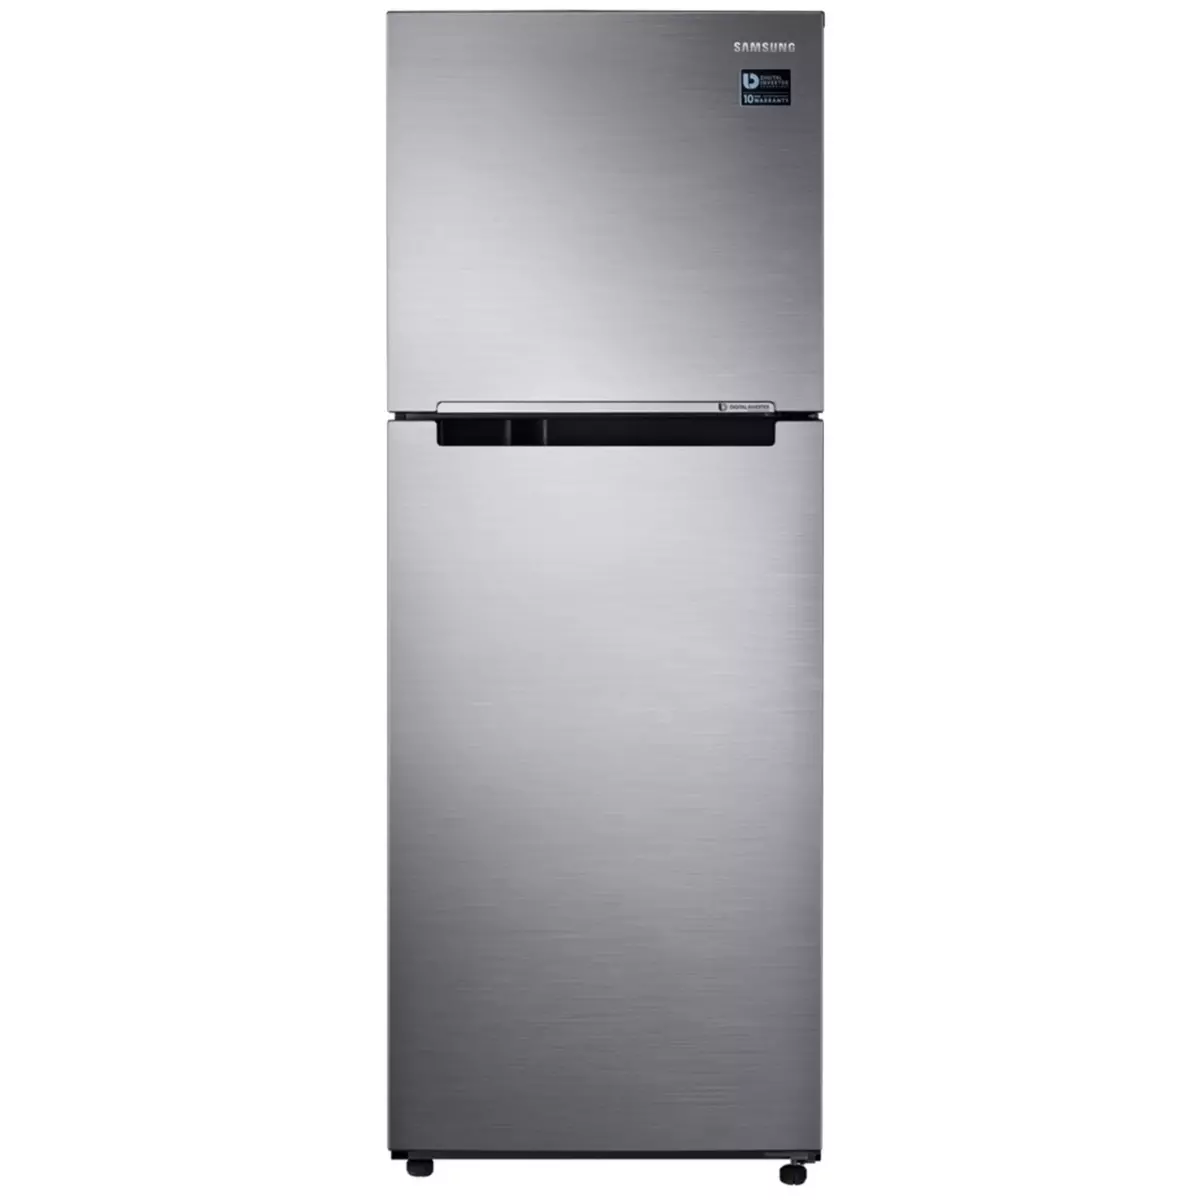 SAMSUNG Réfrigérateur 2 portes RT29K5030S9, 300 L, Froid ventilé No frost